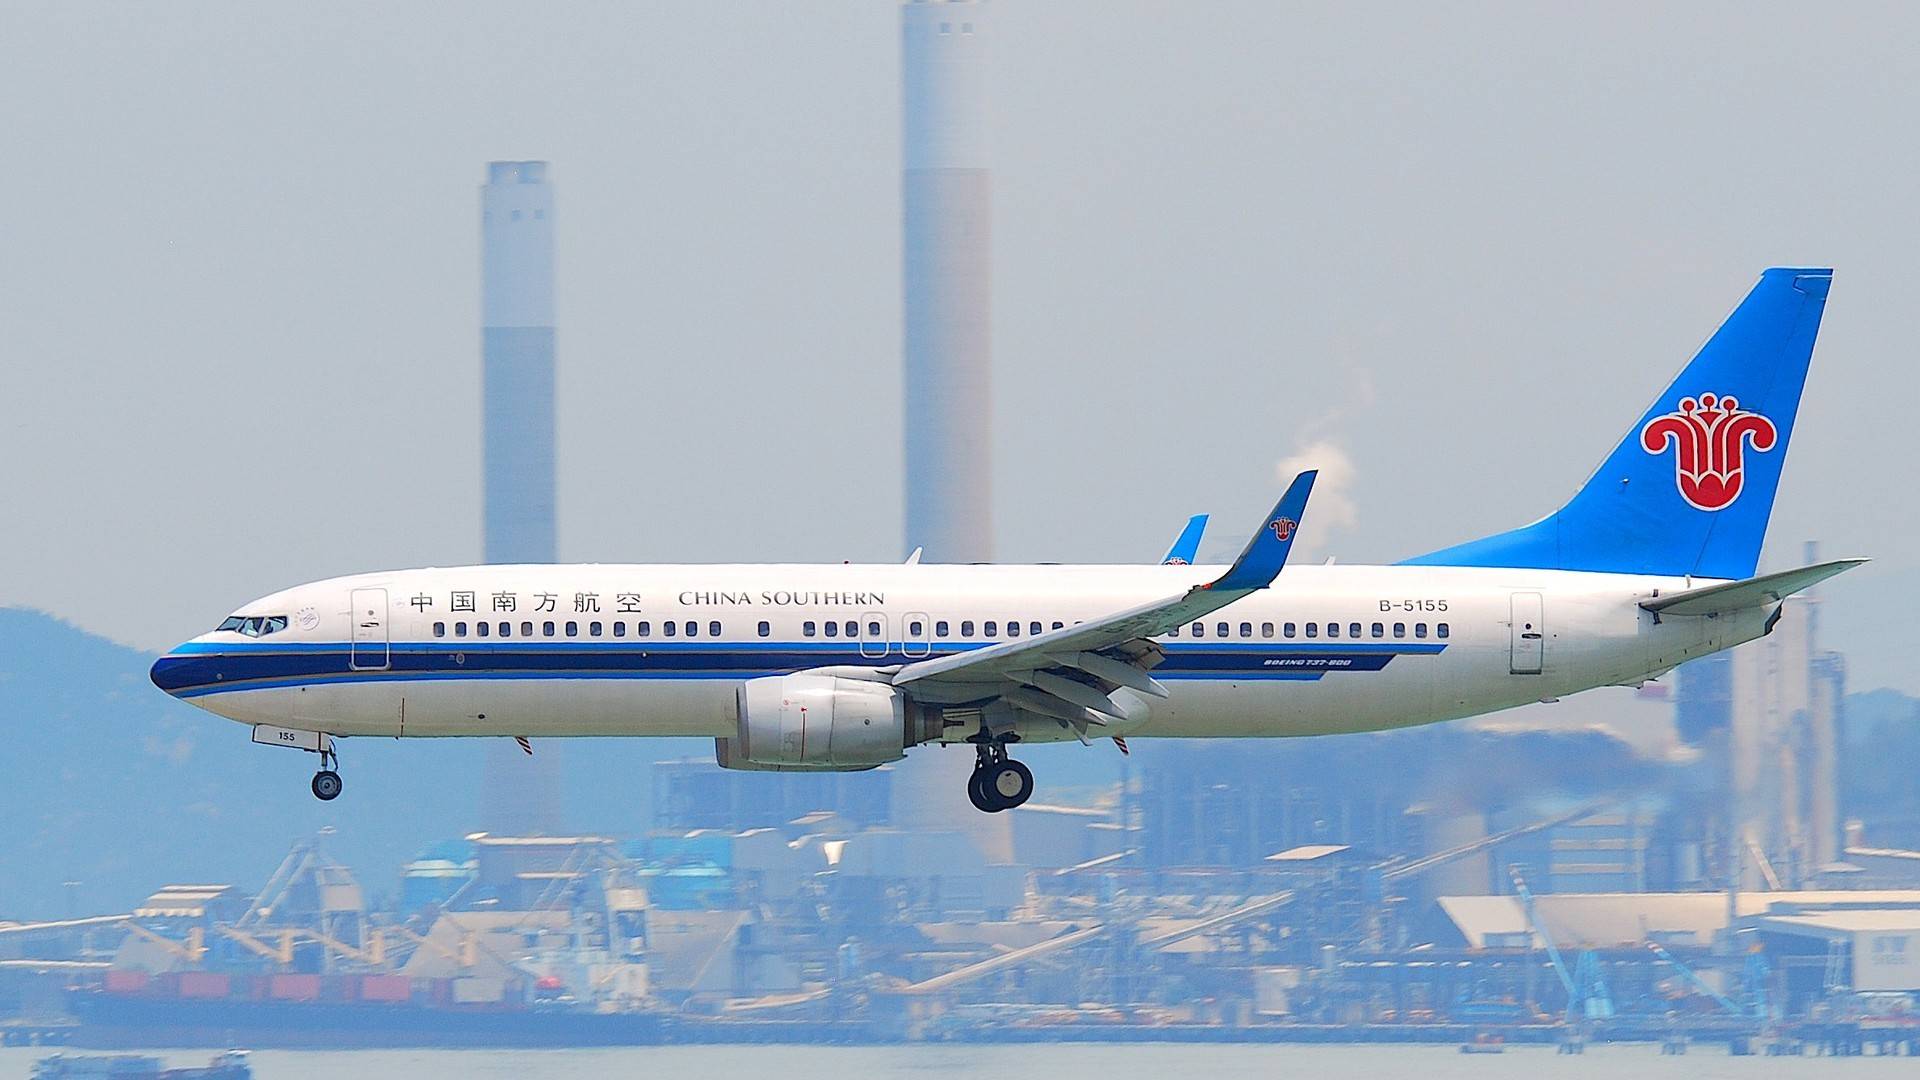 Китайские южные авиалинии авиакомпания - официальный сайт china southern airlines, контакты, авиабилеты и расписание рейсов  2022